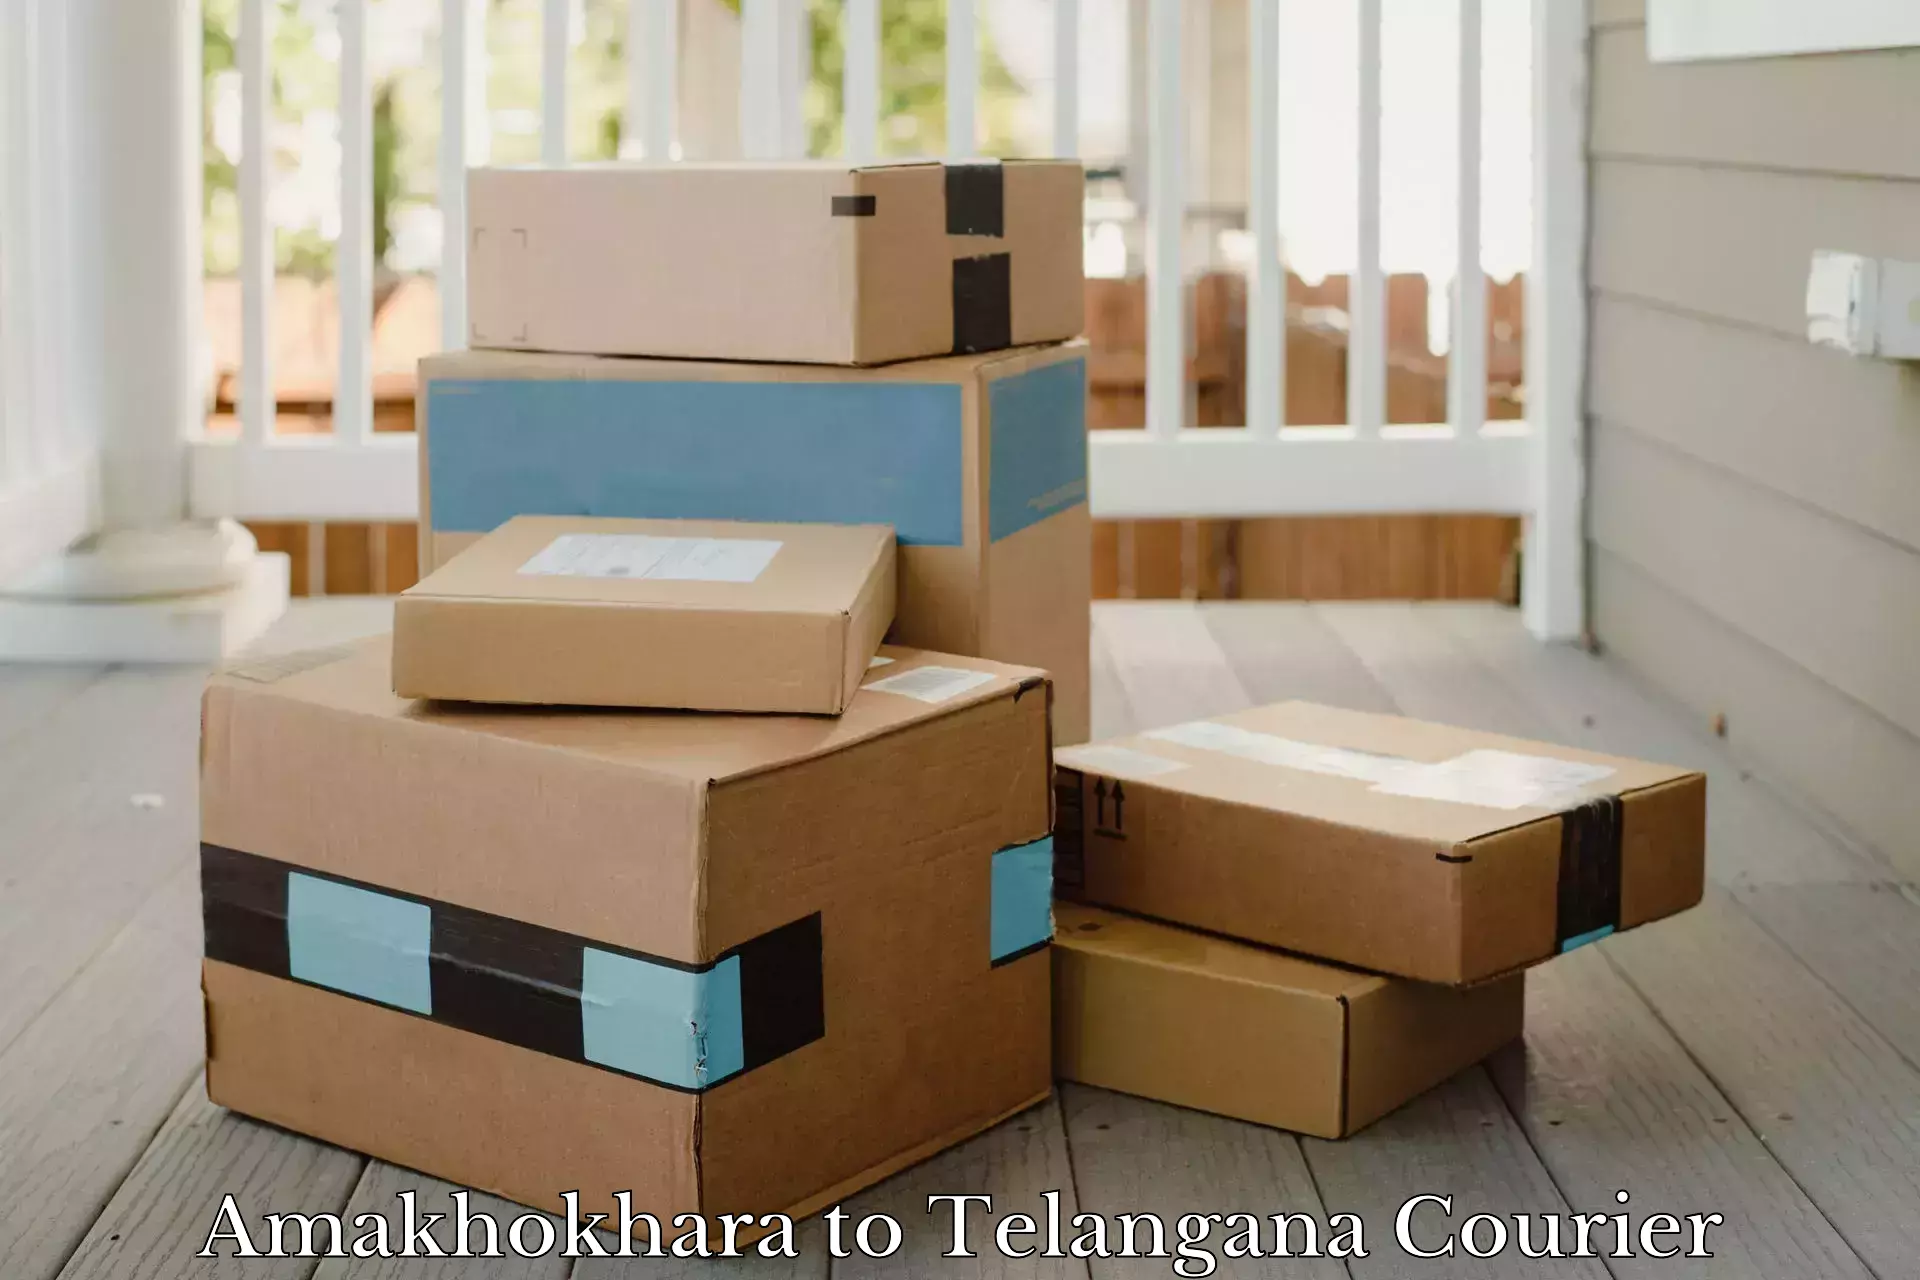 Nationwide shipping coverage Amakhokhara to Chegunta